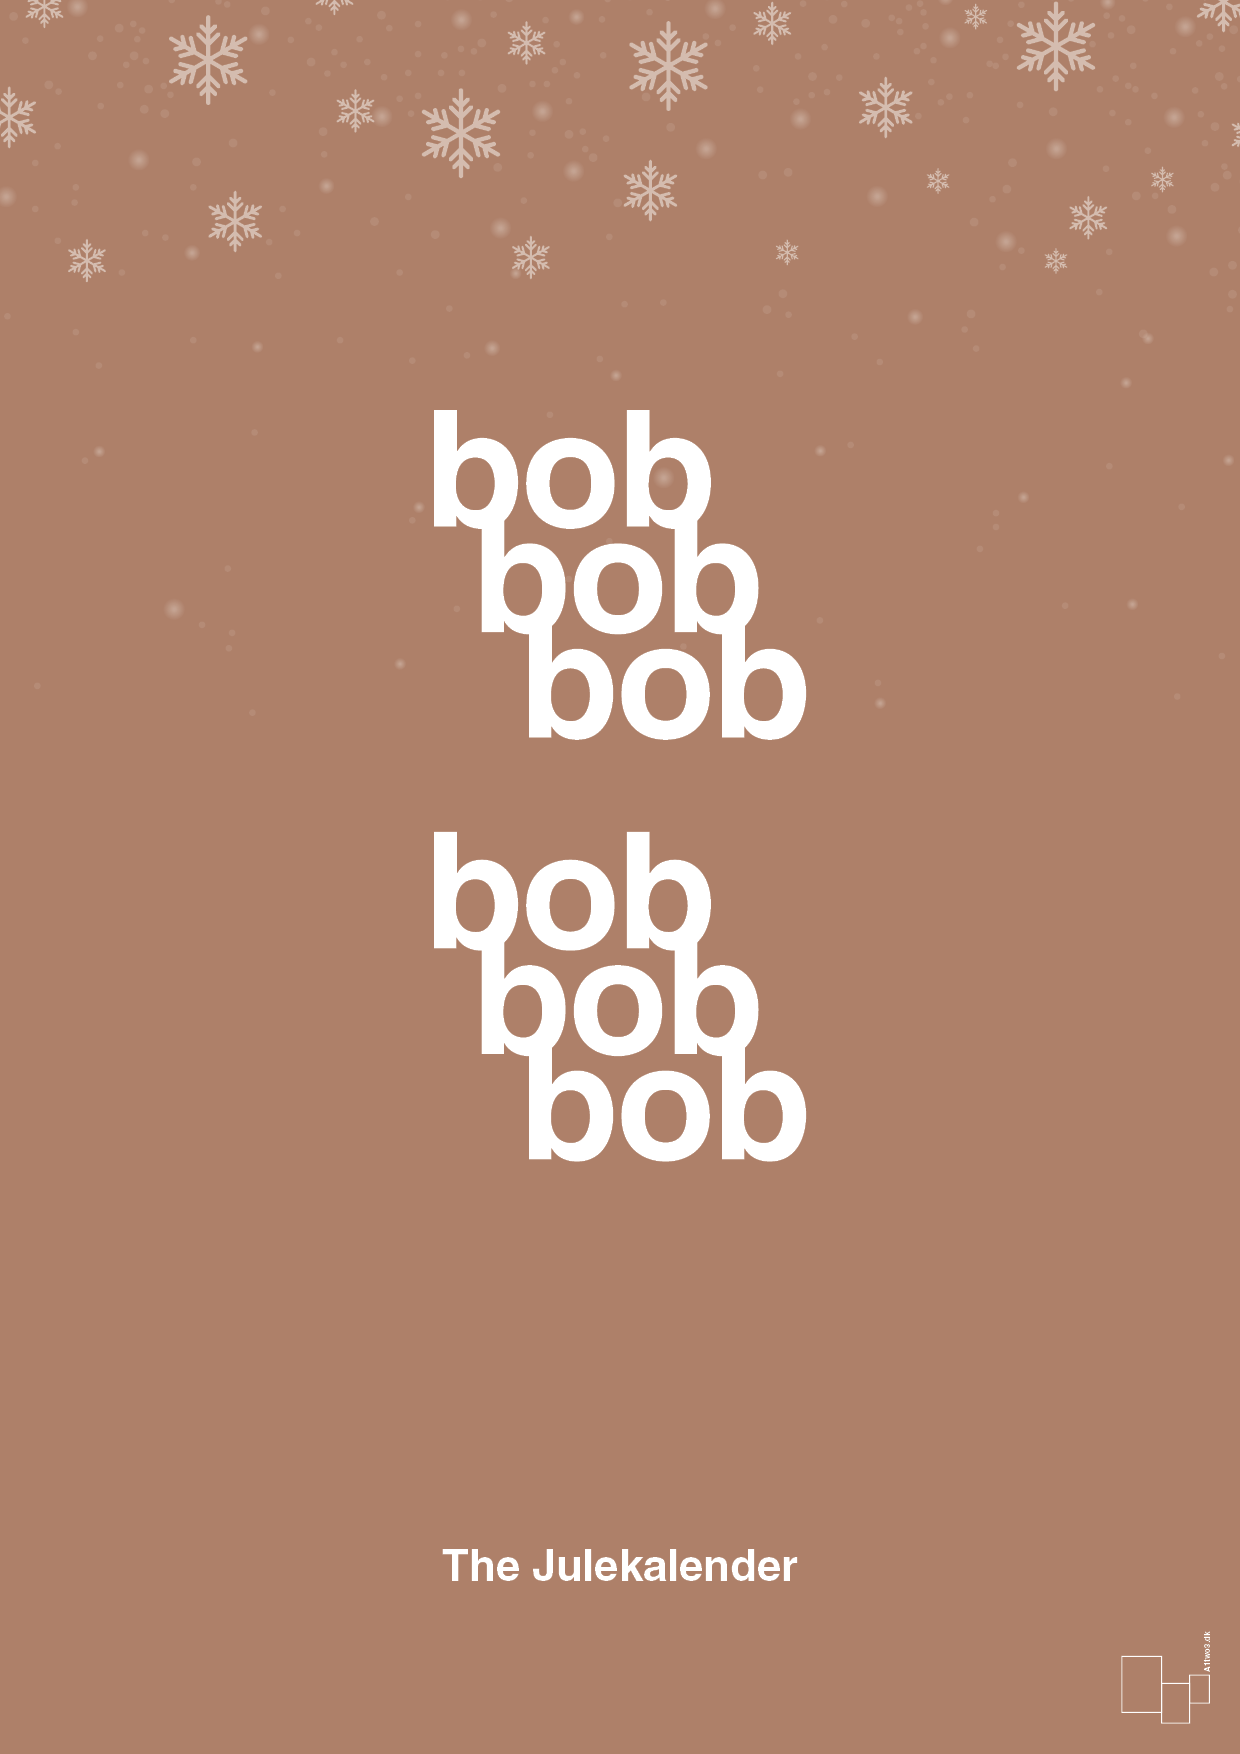 bob bob bob - Plakat med Begivenheder i Cider Spice